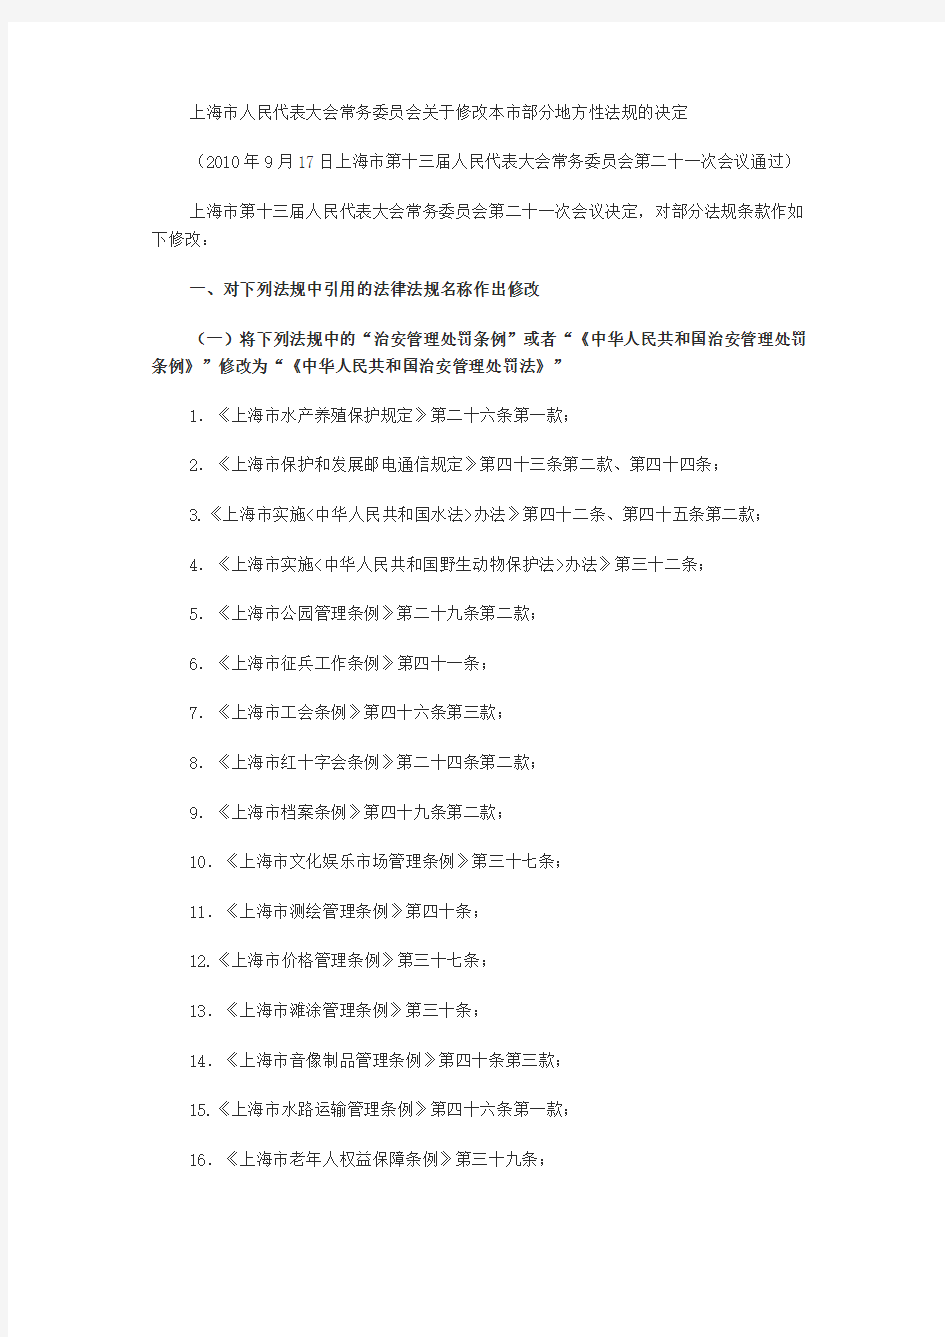 上海本市部分地方性法规的决定